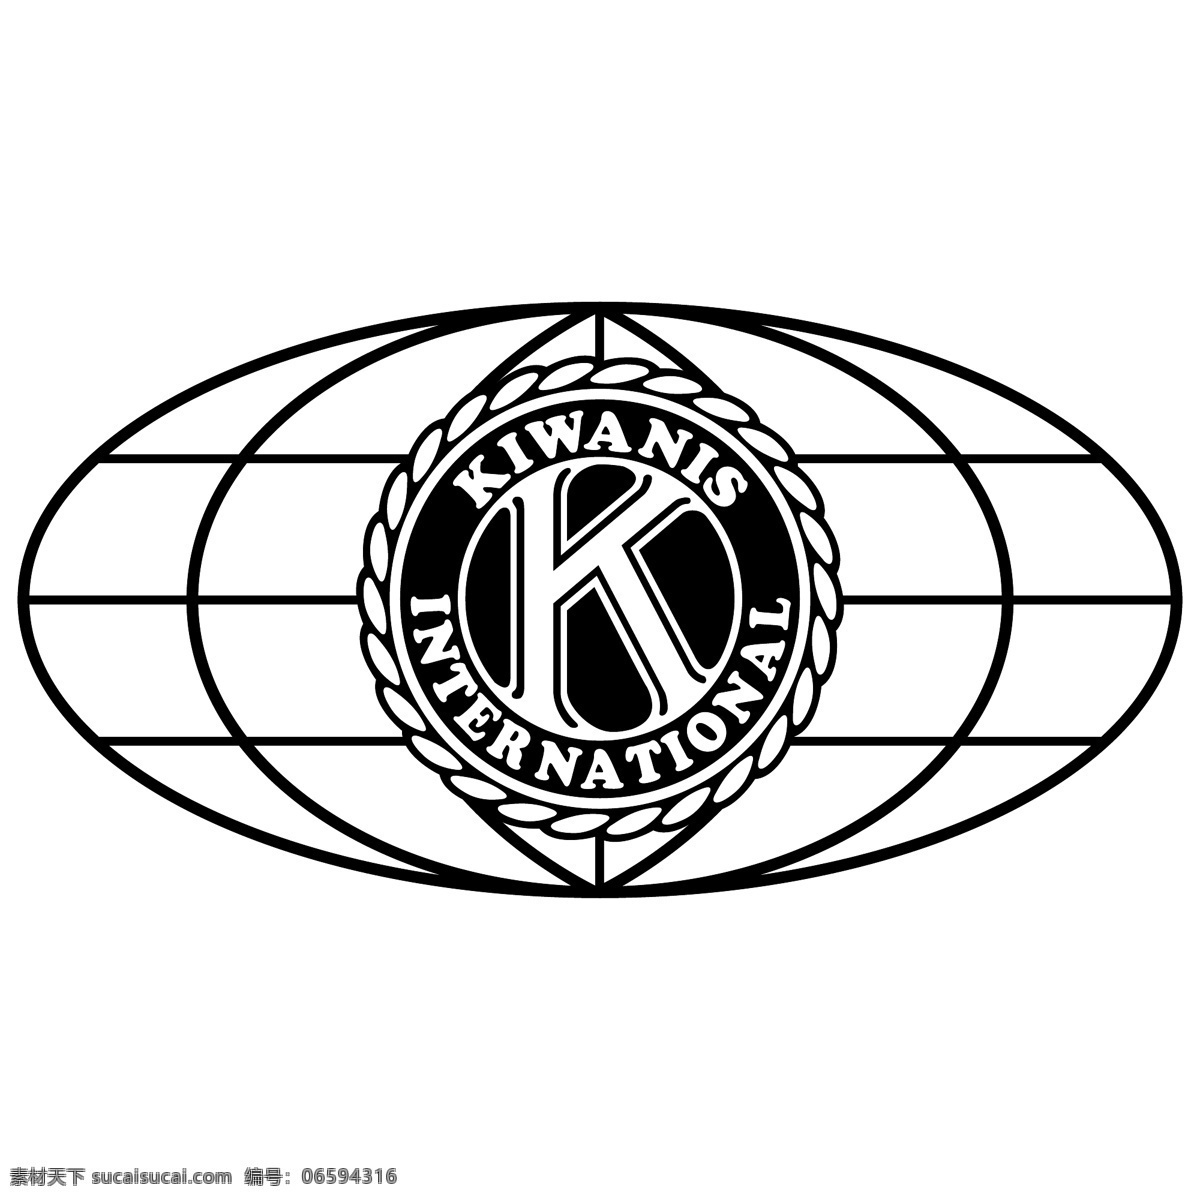 基瓦尼斯国际 矢量标志下载 免费矢量标识 商标 品牌标识 标识 矢量 免费 品牌 公司 白色